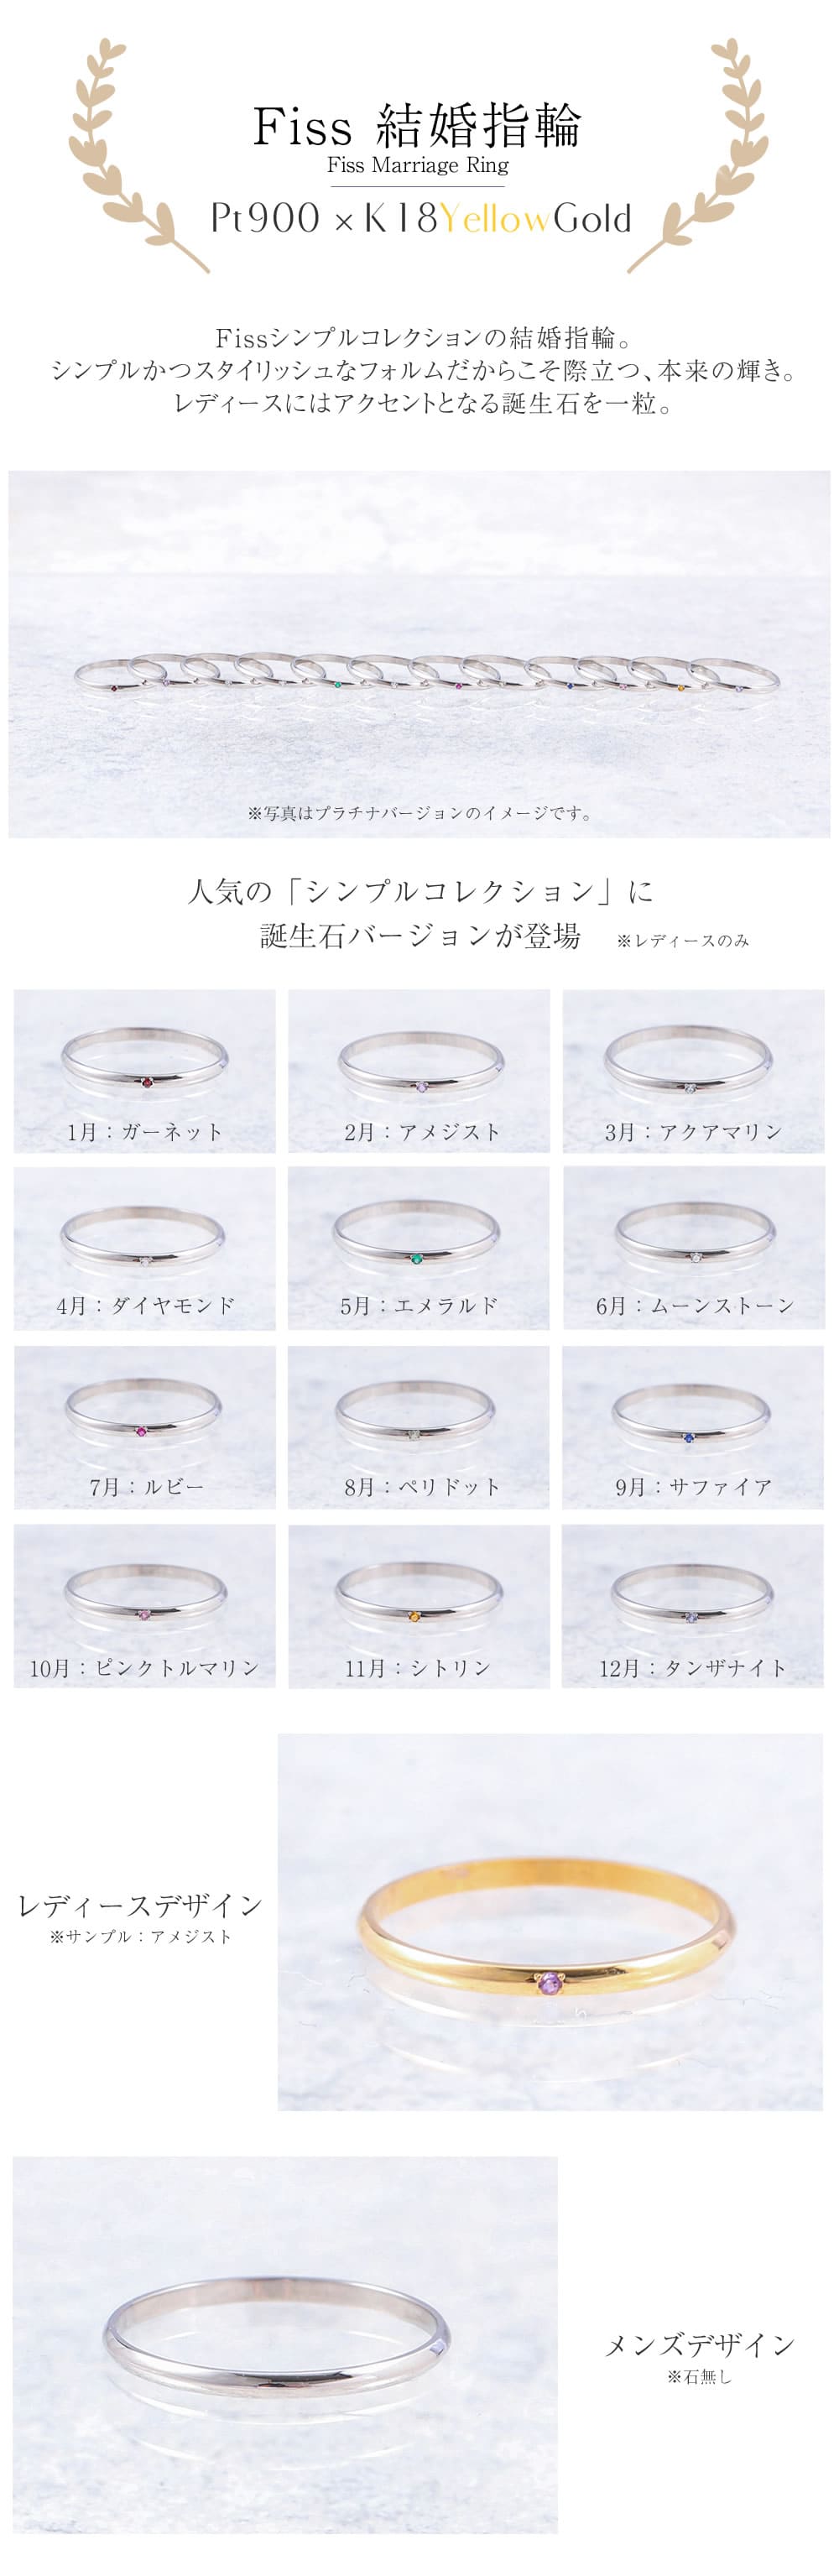 プラチナとK18イエローゴールドの結婚指輪